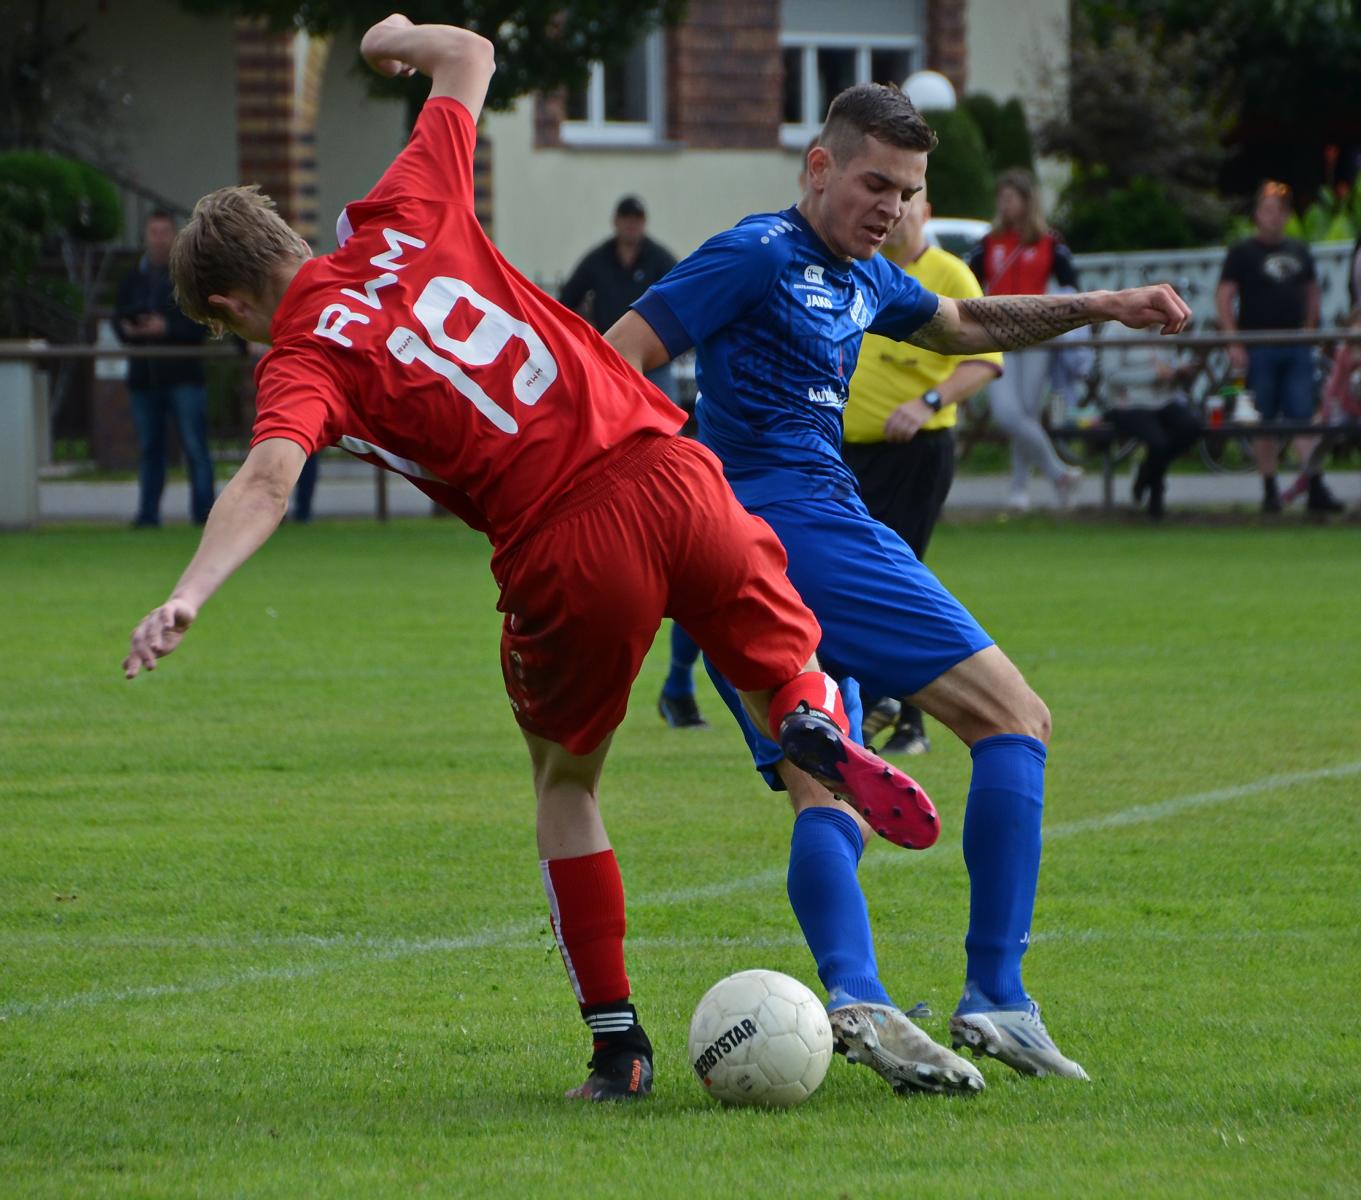 Spielbericht: Rot Weiß Merzdorf - Eiche Branitz 0:4 (0:1), 11.09.2022